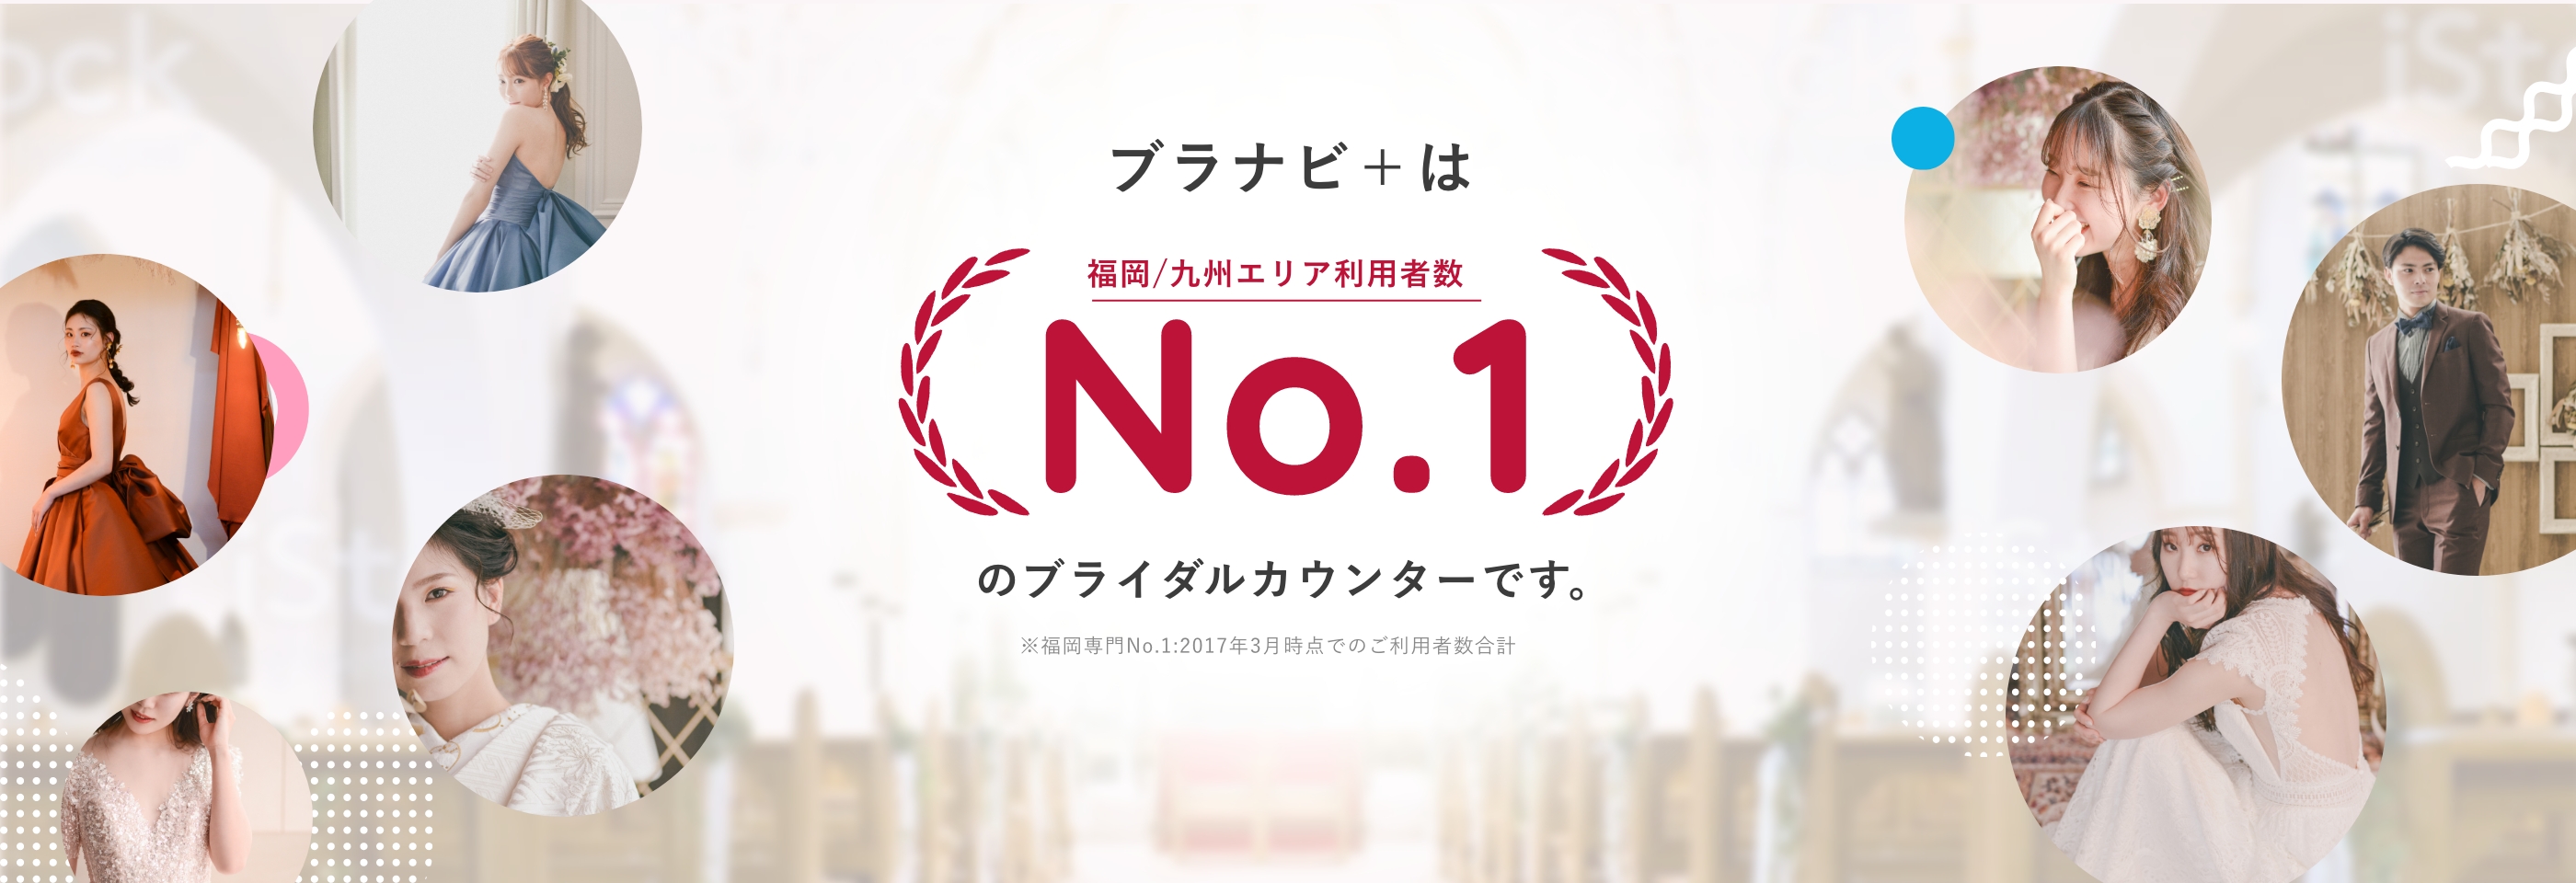 ブラナビ＋は福岡/九州エリア利用者数No.1のブライダルカウンターです。